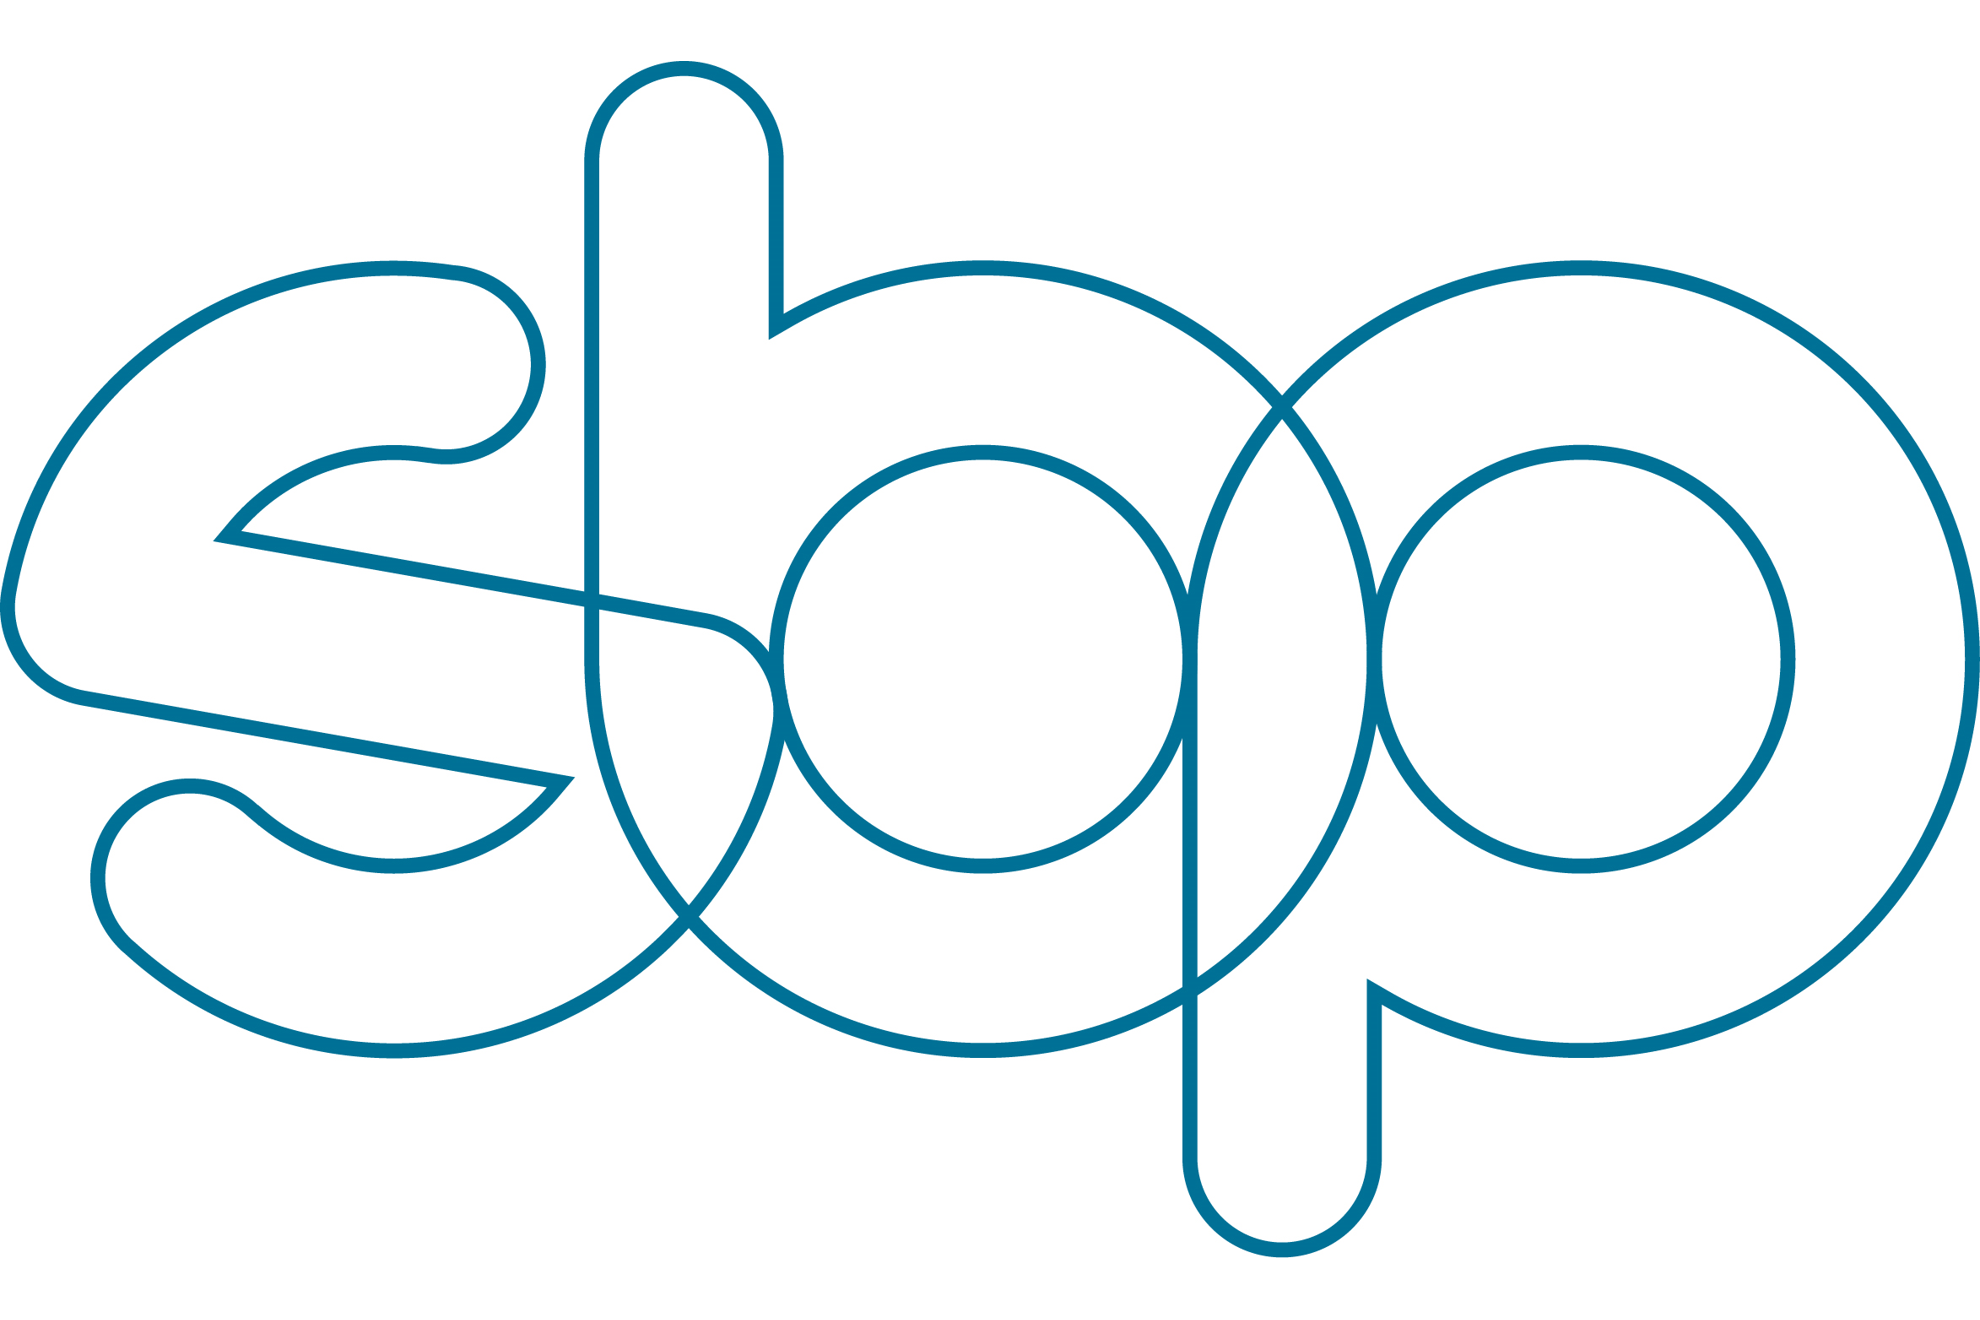 SBPP logo